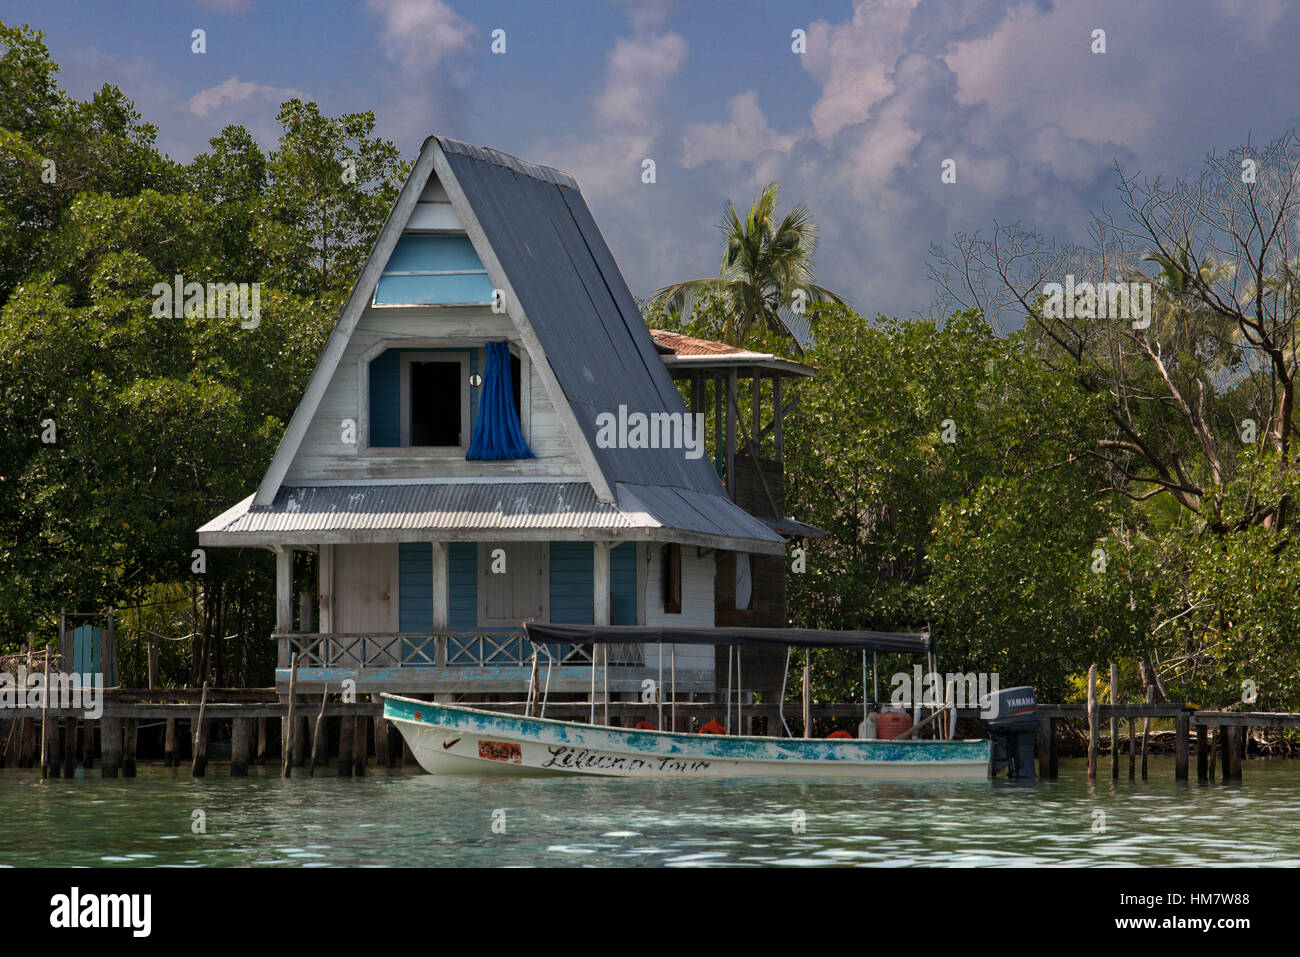 Casa sobre pilotes sobre el agua con paneles solares y densa vegetación tropical en el fondo, Bocas del Toro, mar Caribe, Panamá. Cabaña tropical en t Foto de stock